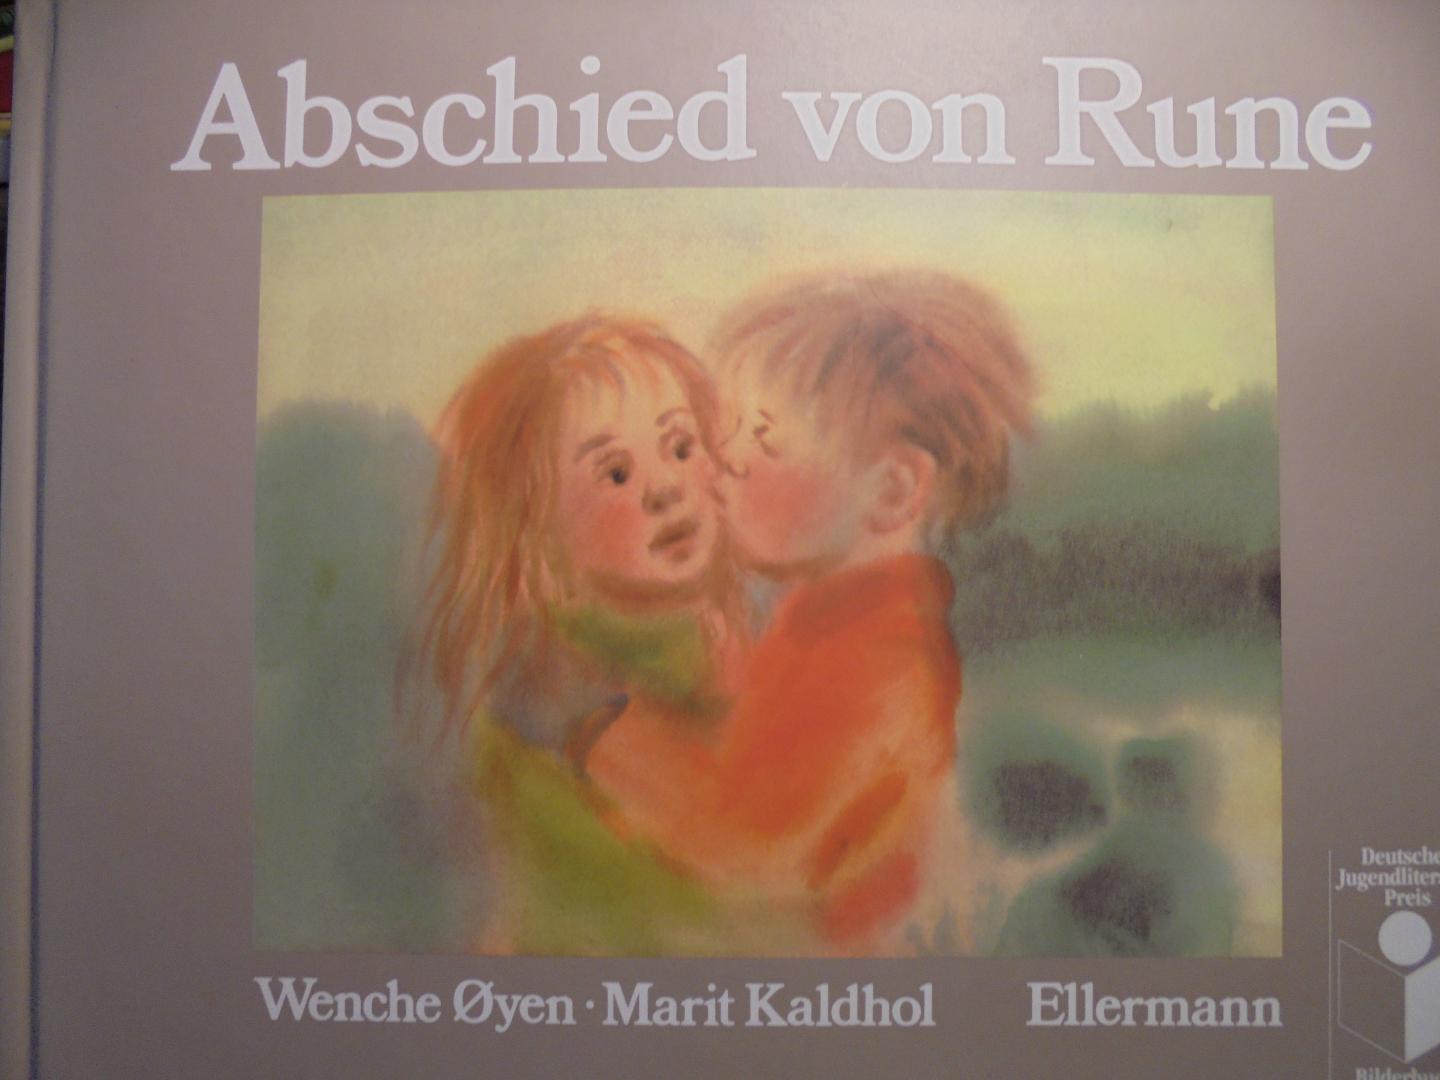 Oyen, Wenche en Kaldhol, Marit - Abschied von Rune